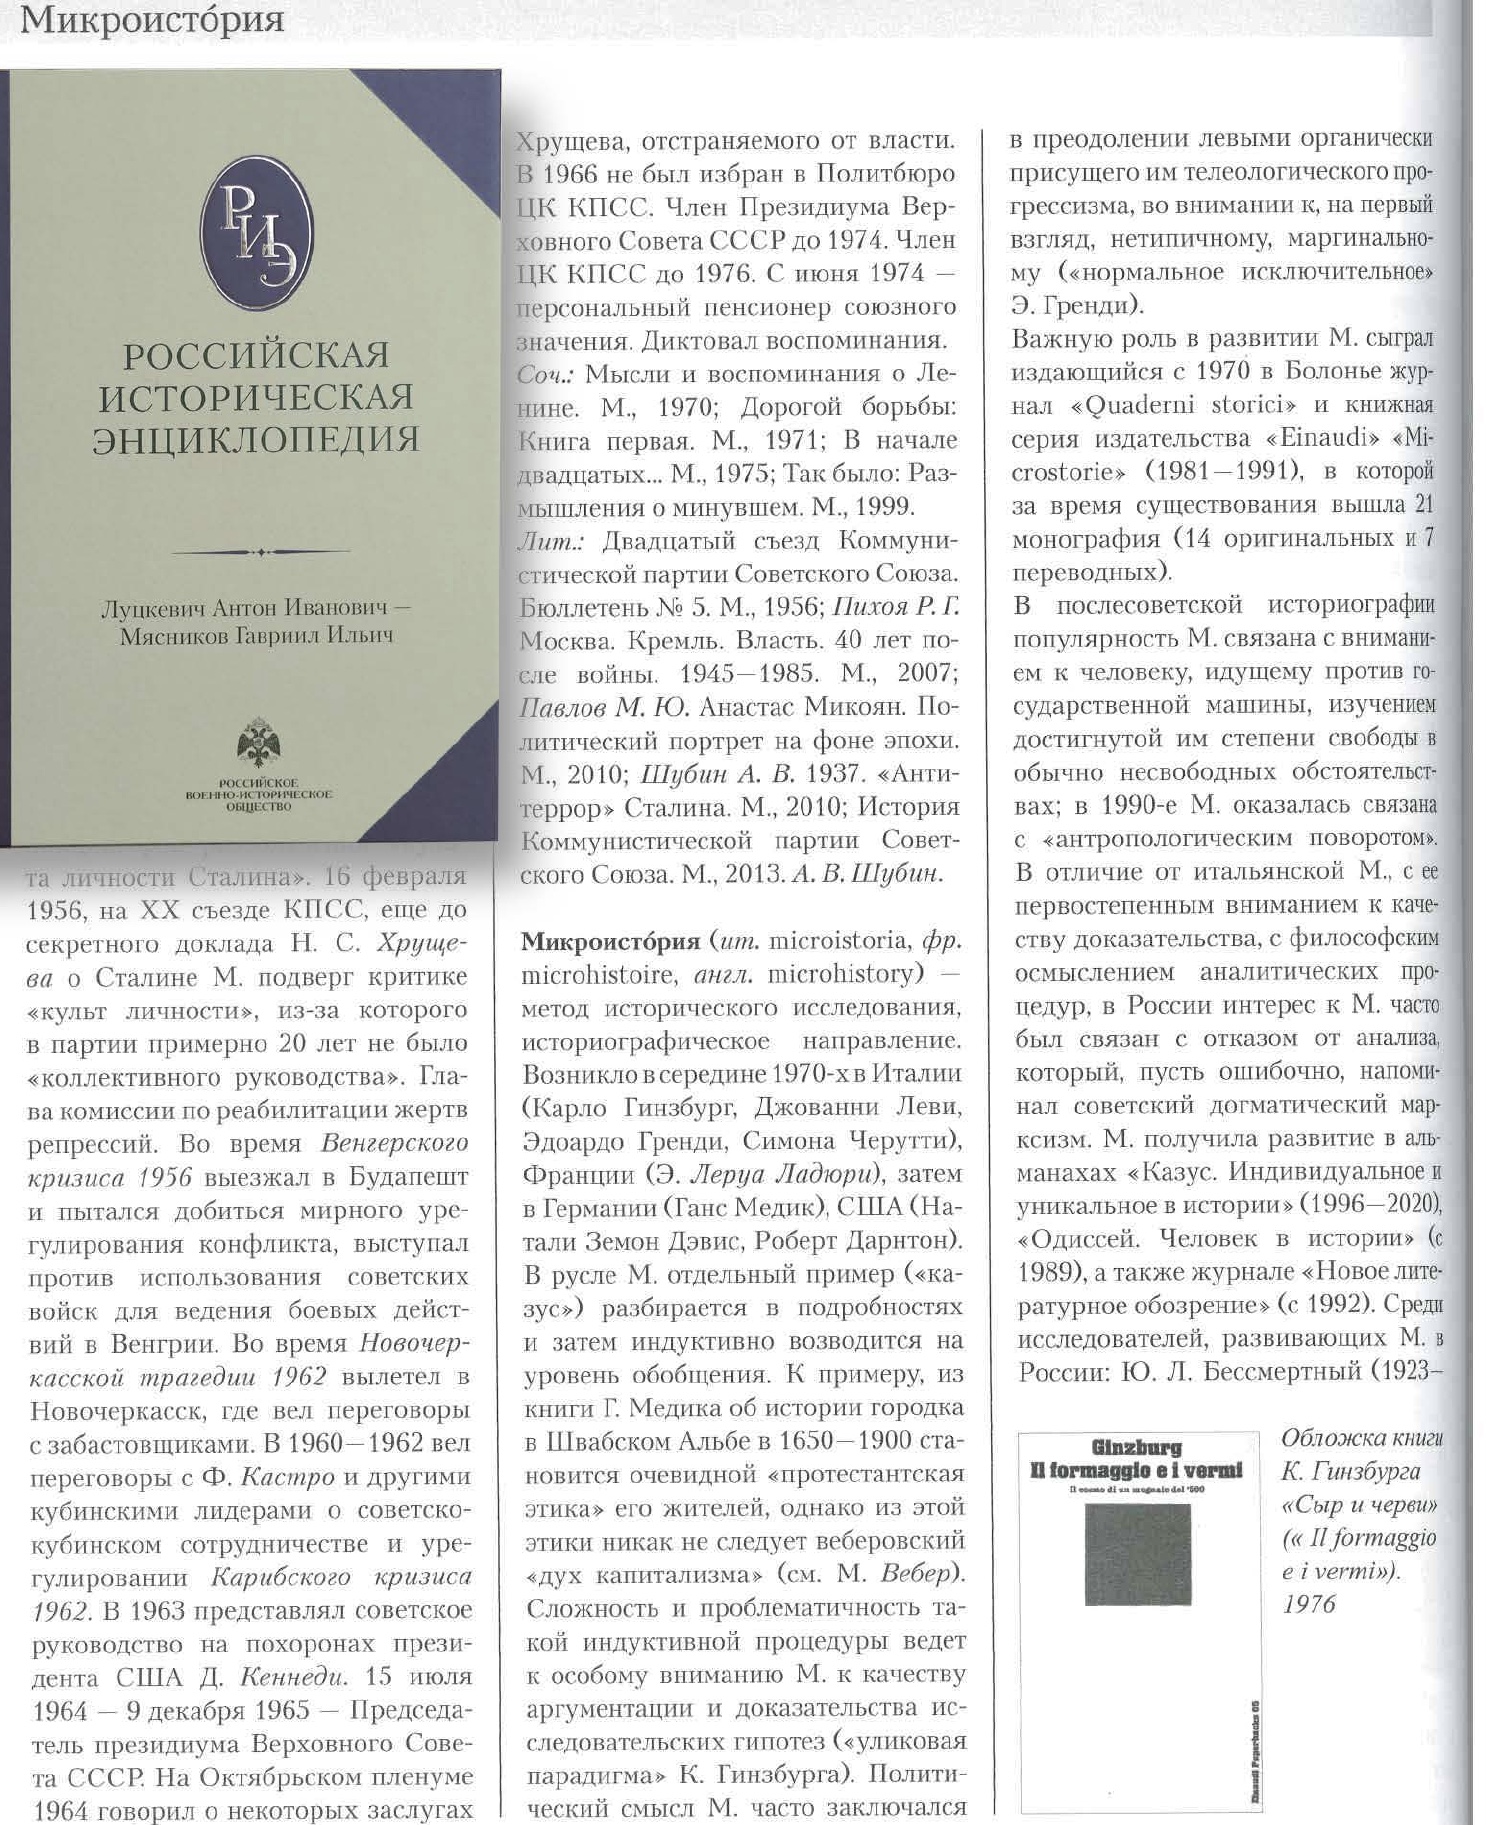 Теоретико-методологические понятия в структуре «Российской исторической энциклопедии»